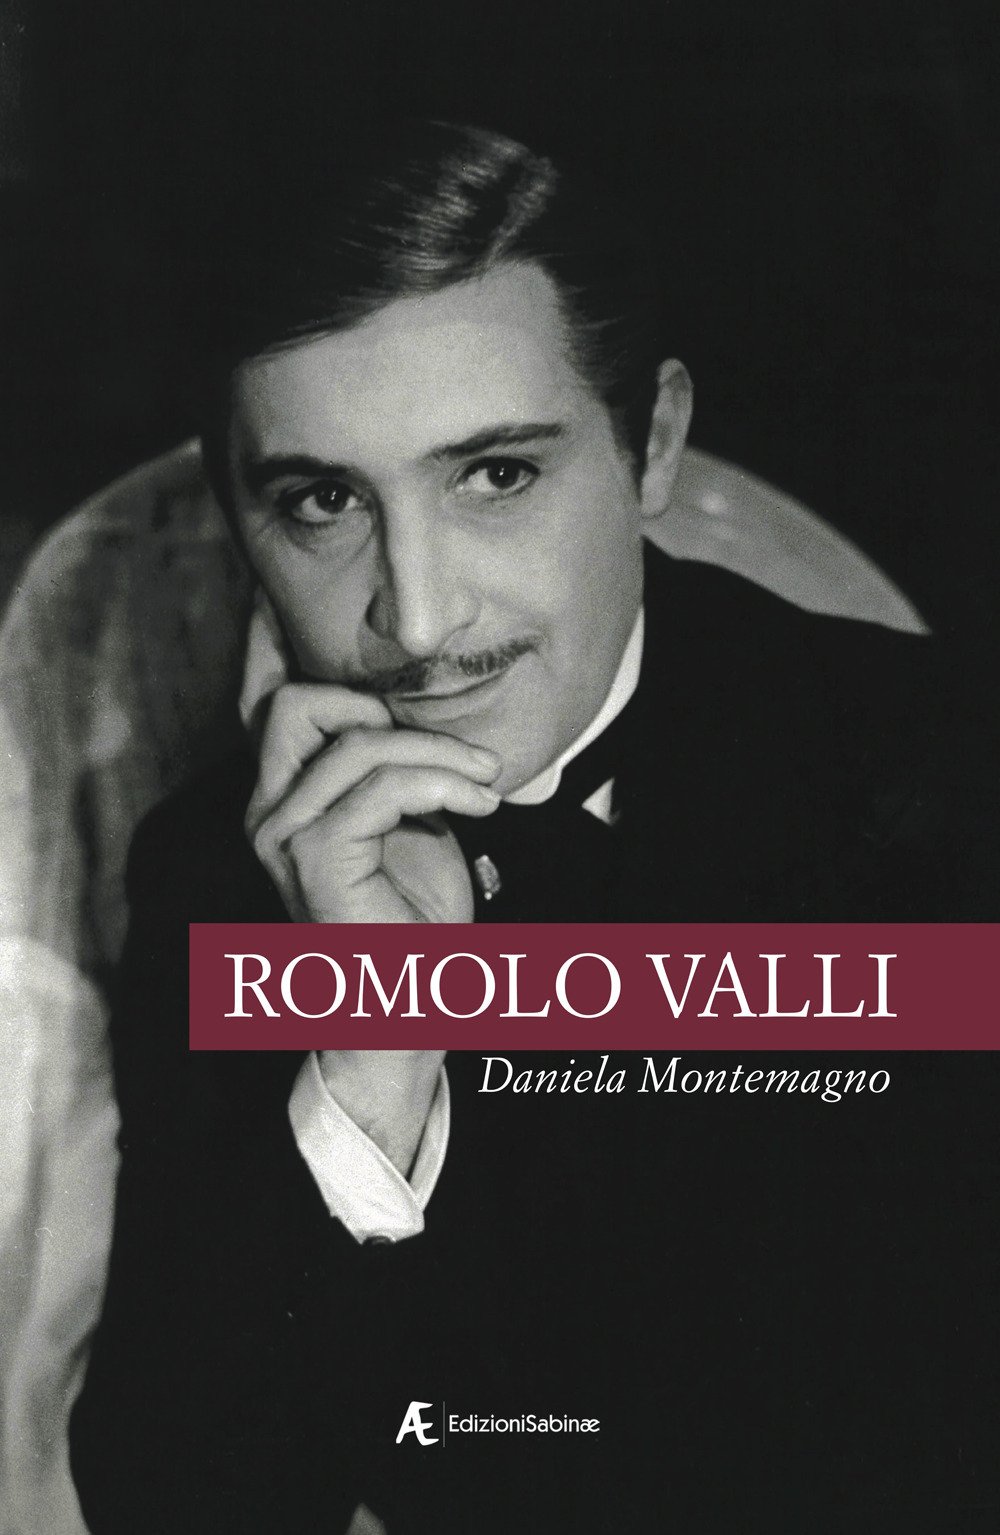 Libri Montemagno Daniela - Romolo Valli NUOVO SIGILLATO, EDIZIONE DEL 21/09/2020 SUBITO DISPONIBILE